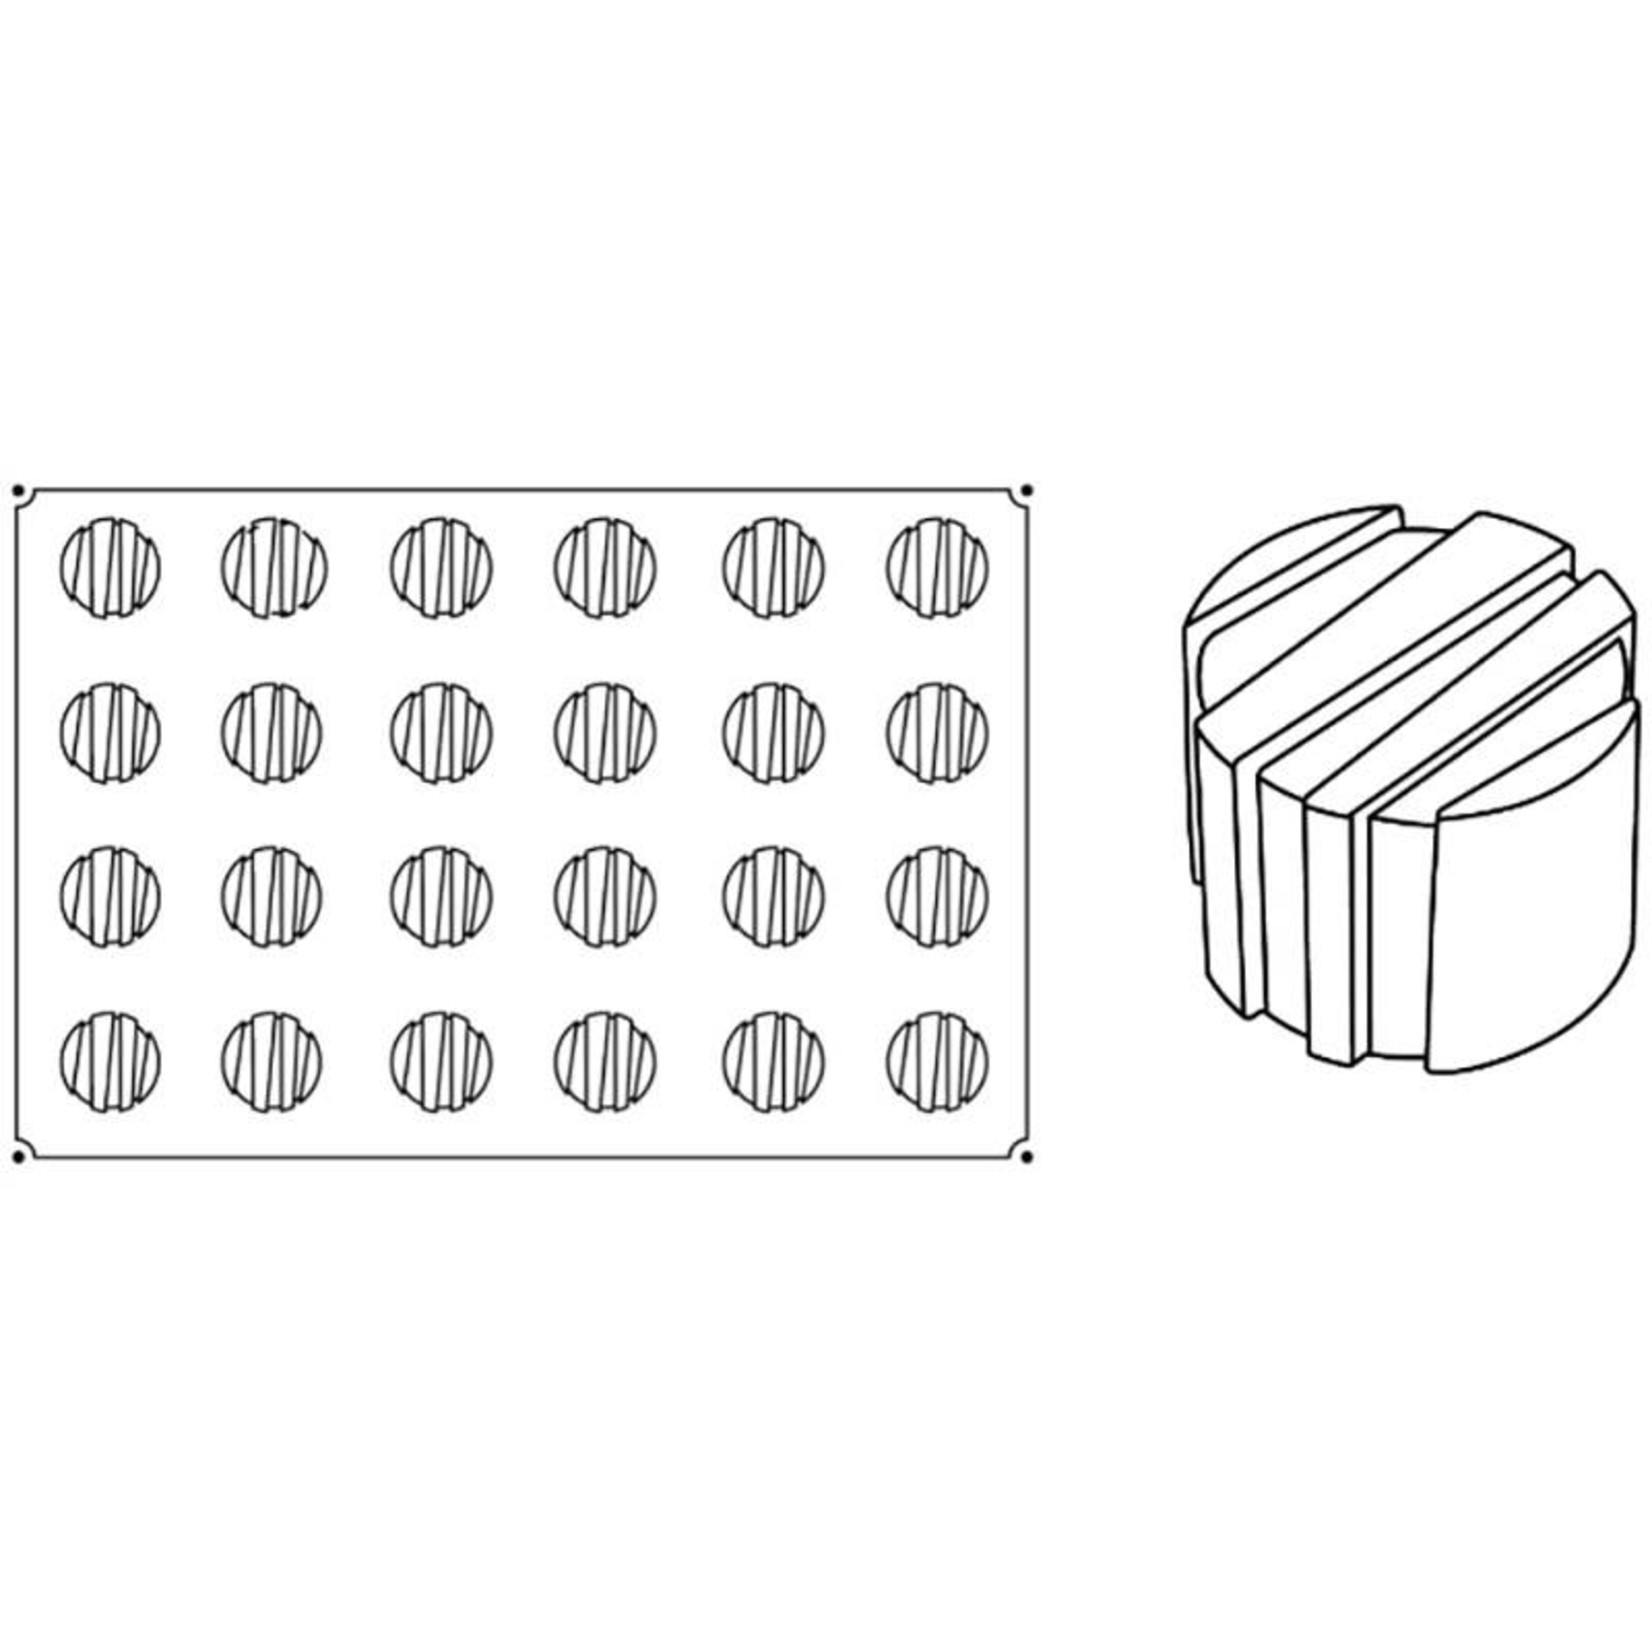 Pavoni Pavoni - Pavoflex silicone mold, Rigo, Monoporzione (24 cavity), PX019